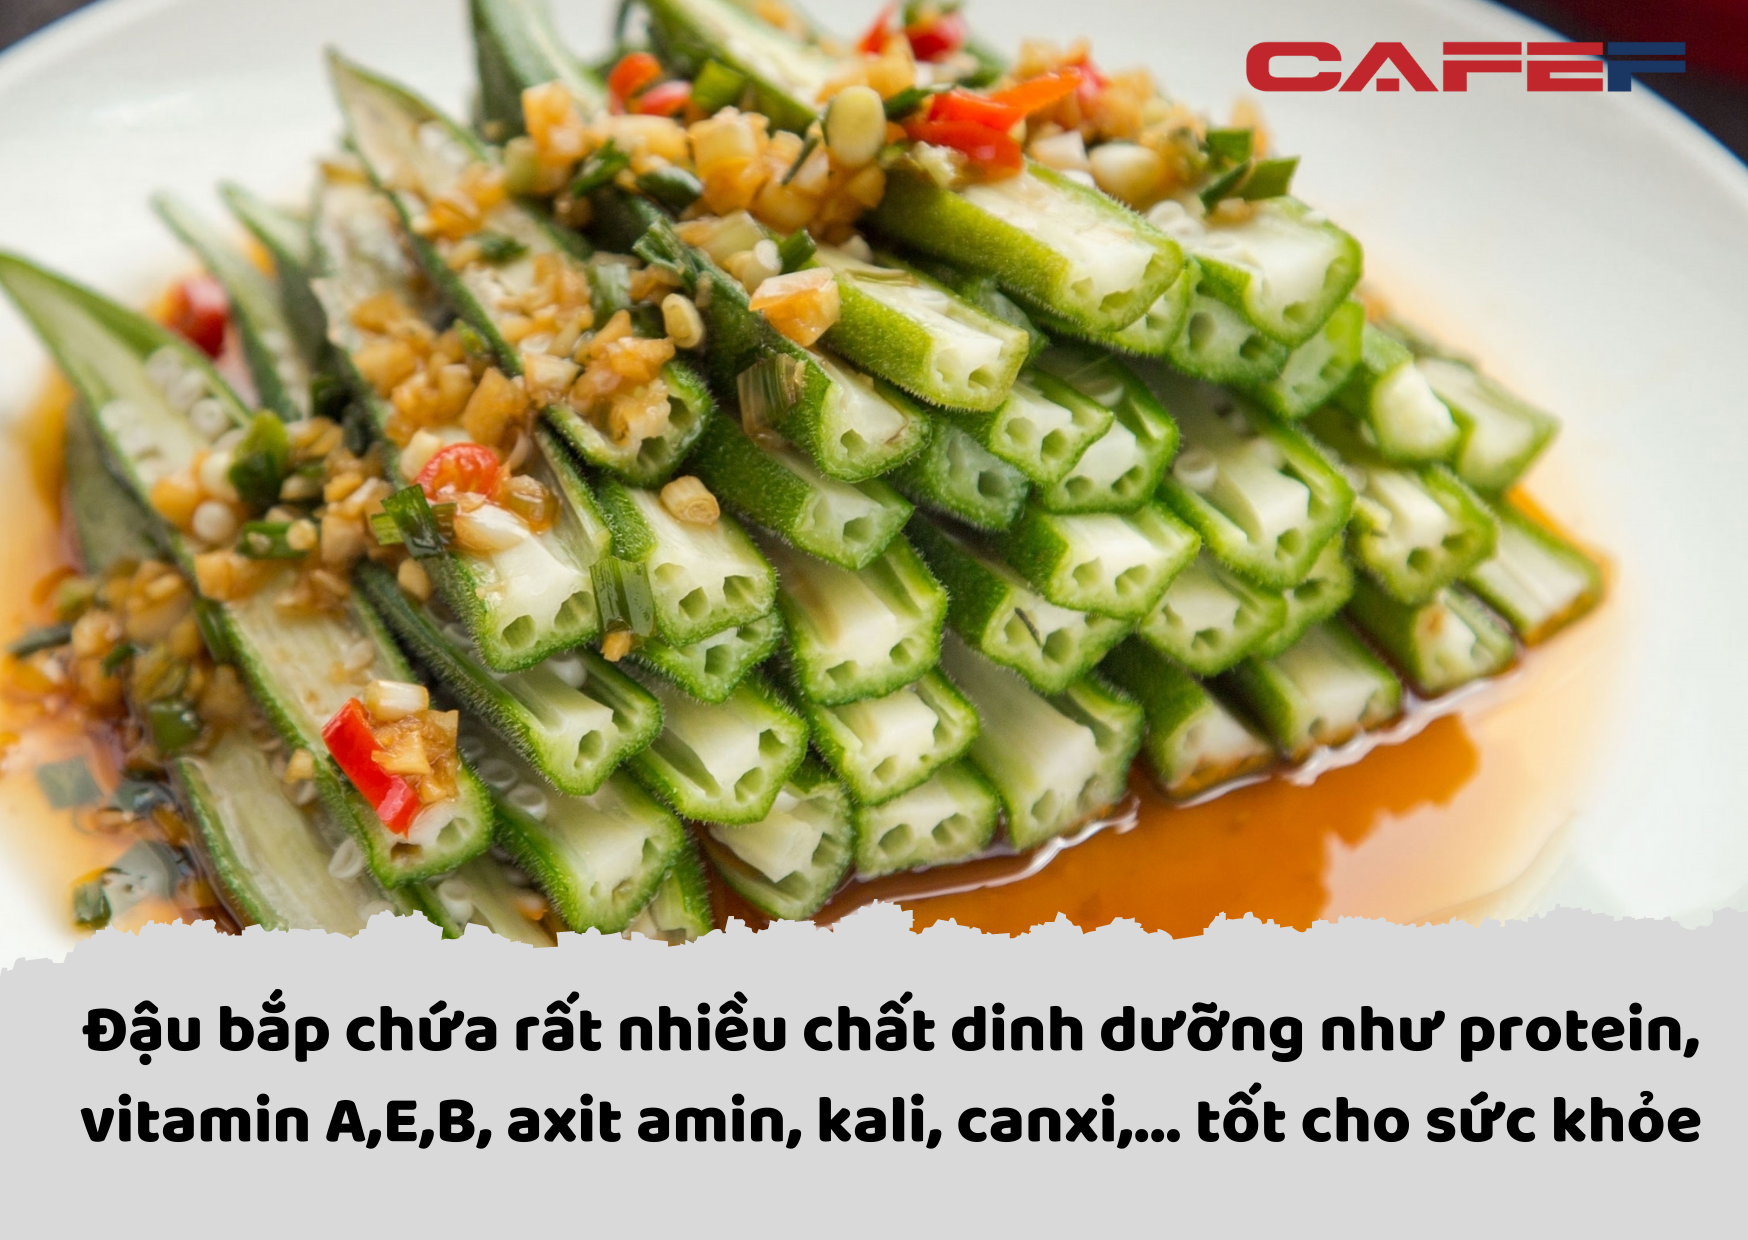 Món ăn được mệnh danh là “nhân sâm xanh”, có bán đầy ngoài chợ Việt: Giàu canxi hơn sữa, tốt cho người tiểu đường mà giá thì rẻ bèo  - Ảnh 1.